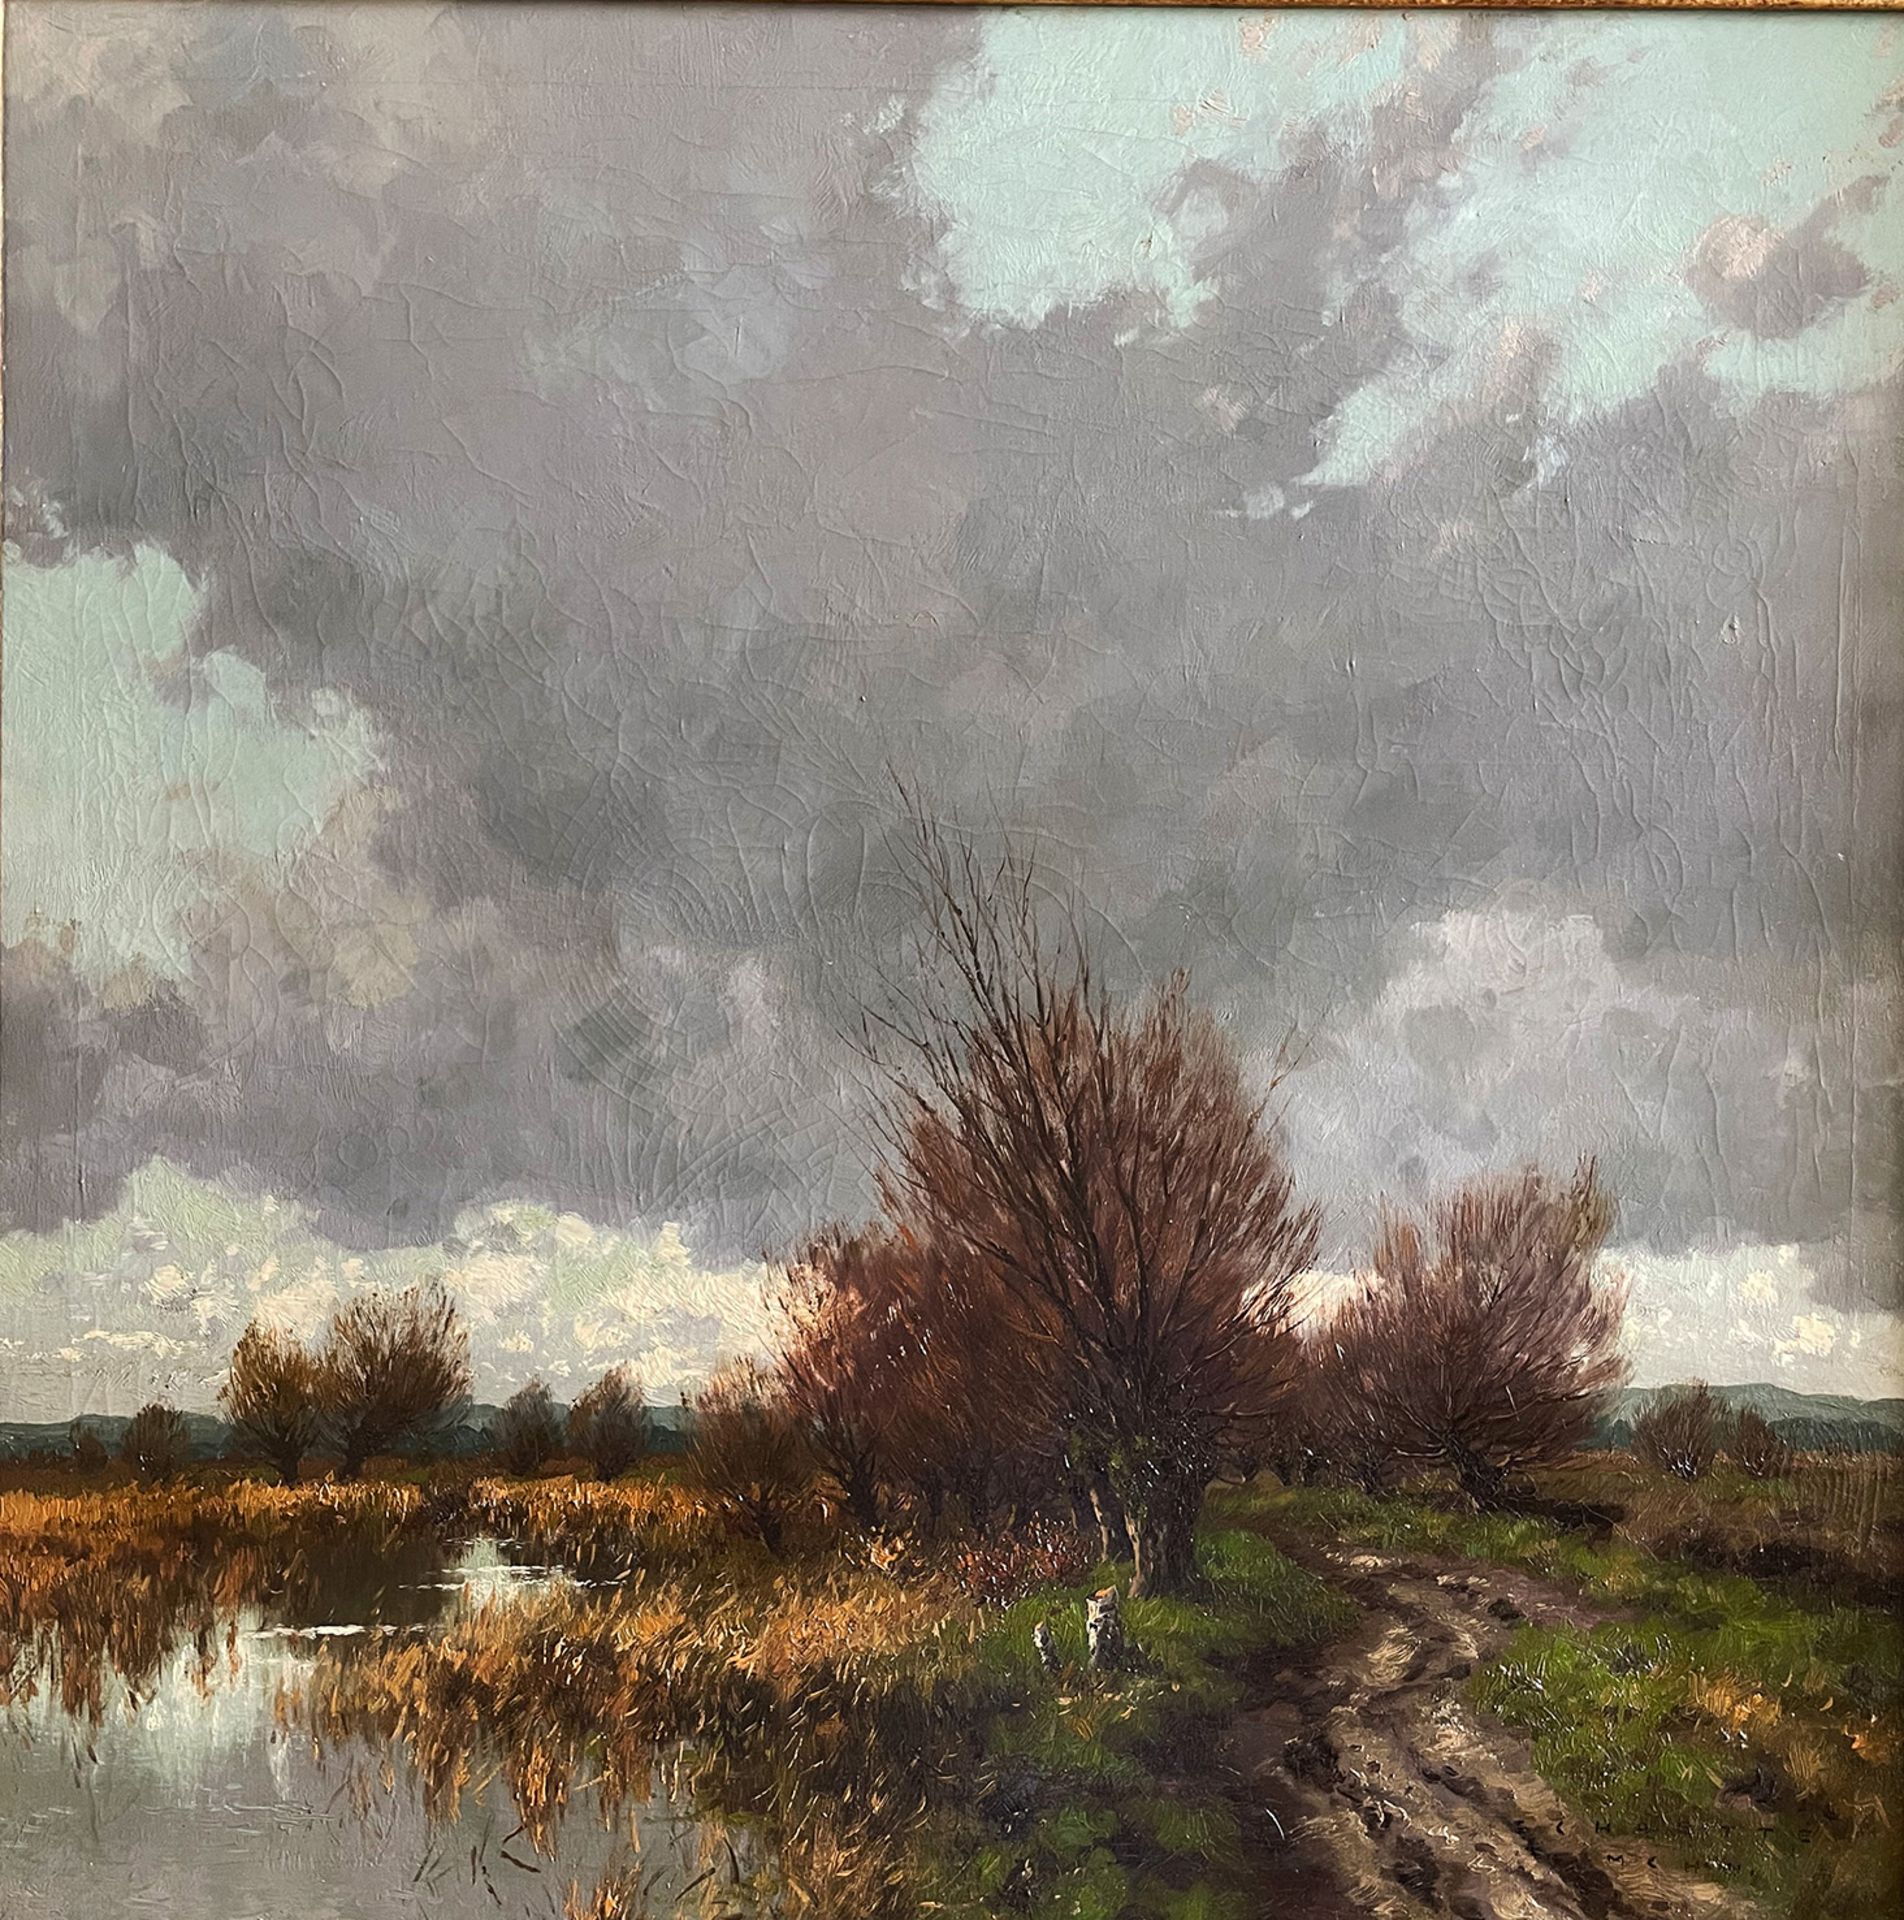 Karl SCHAETTE (1884-1951), Dachauer Landschaft mit Moos, Bach und Bäumen unter stürmischem